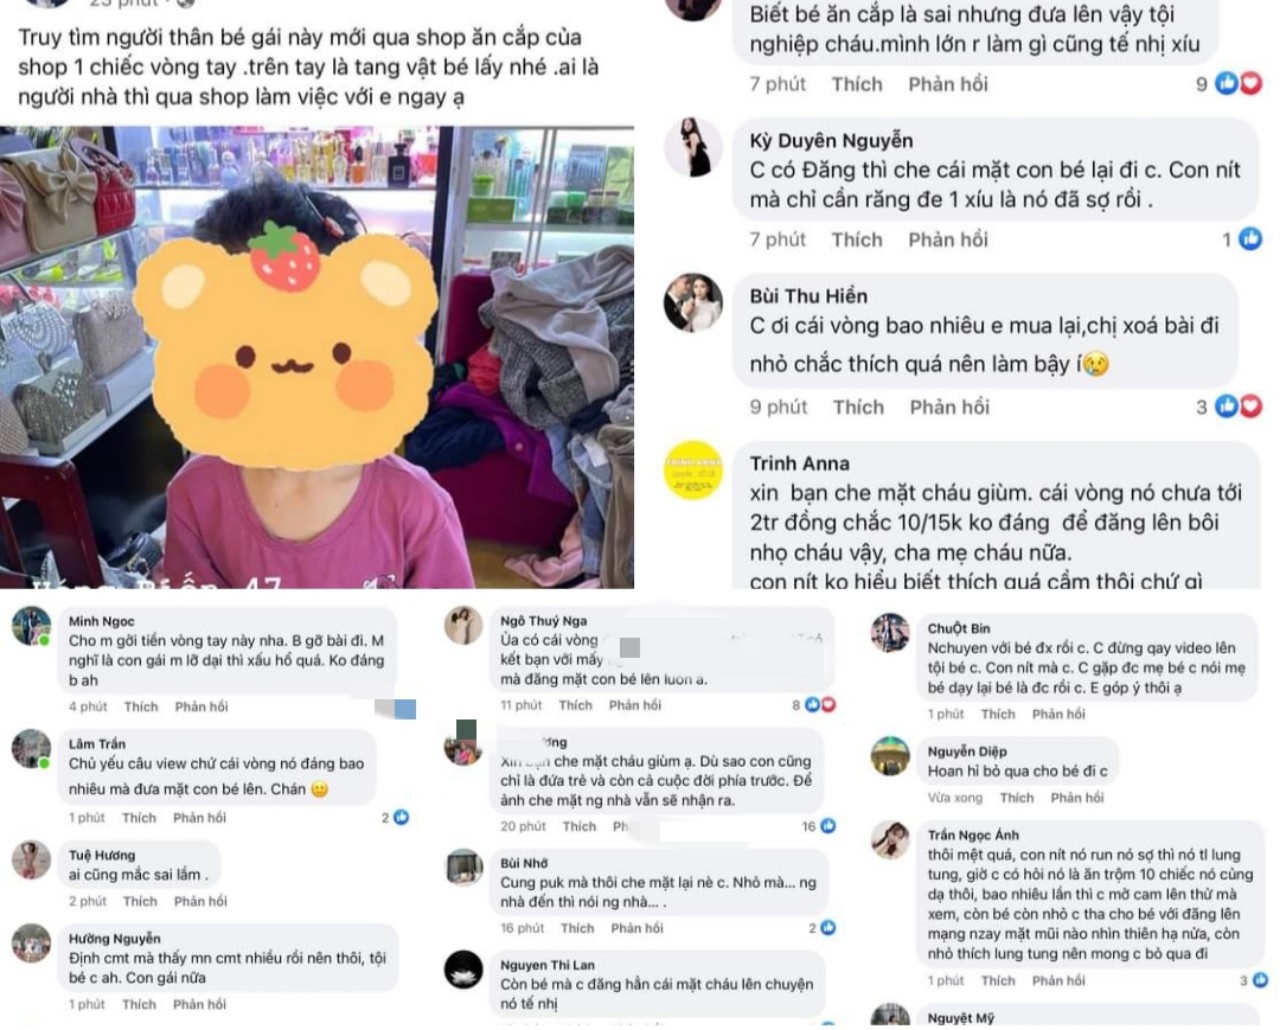 Cháu bé 5 tuổi bị chụp hình bêu lên mạng xã hội vì lấy chiếc vòng trị giá 10 ngàn đồng